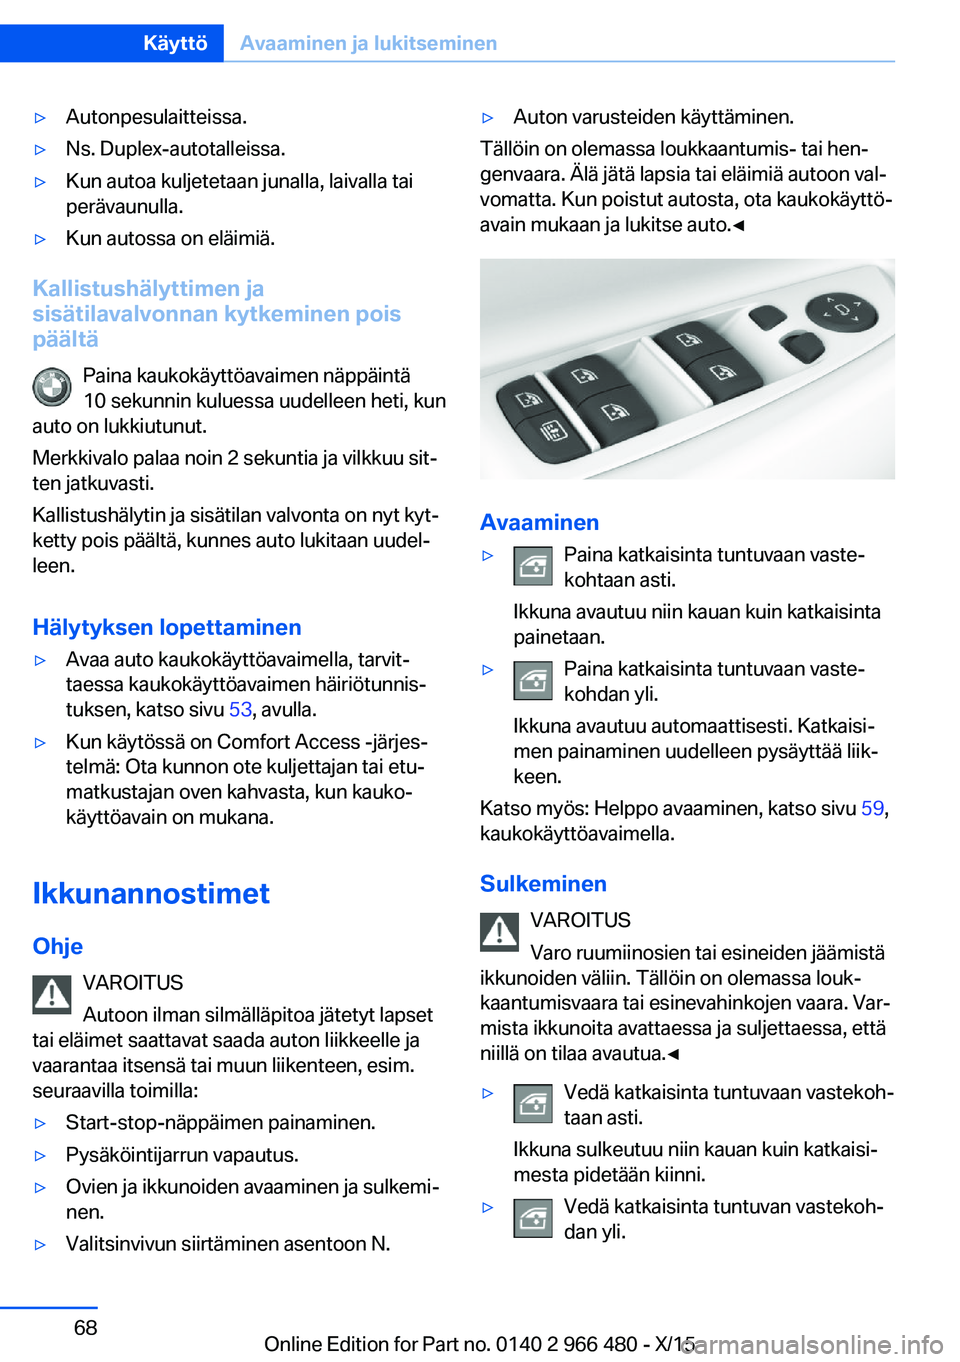 BMW 7 SERIES 2016  Omistajan Käsikirja (in Finnish) ▷Autonpesulaitteissa.▷Ns. Duplex-autotalleissa.▷Kun autoa kuljetetaan junalla, laivalla tai
perävaunulla.▷Kun autossa on eläimiä.
Kallistushälyttimen ja
sisätilavalvonnan kytkeminen pois 